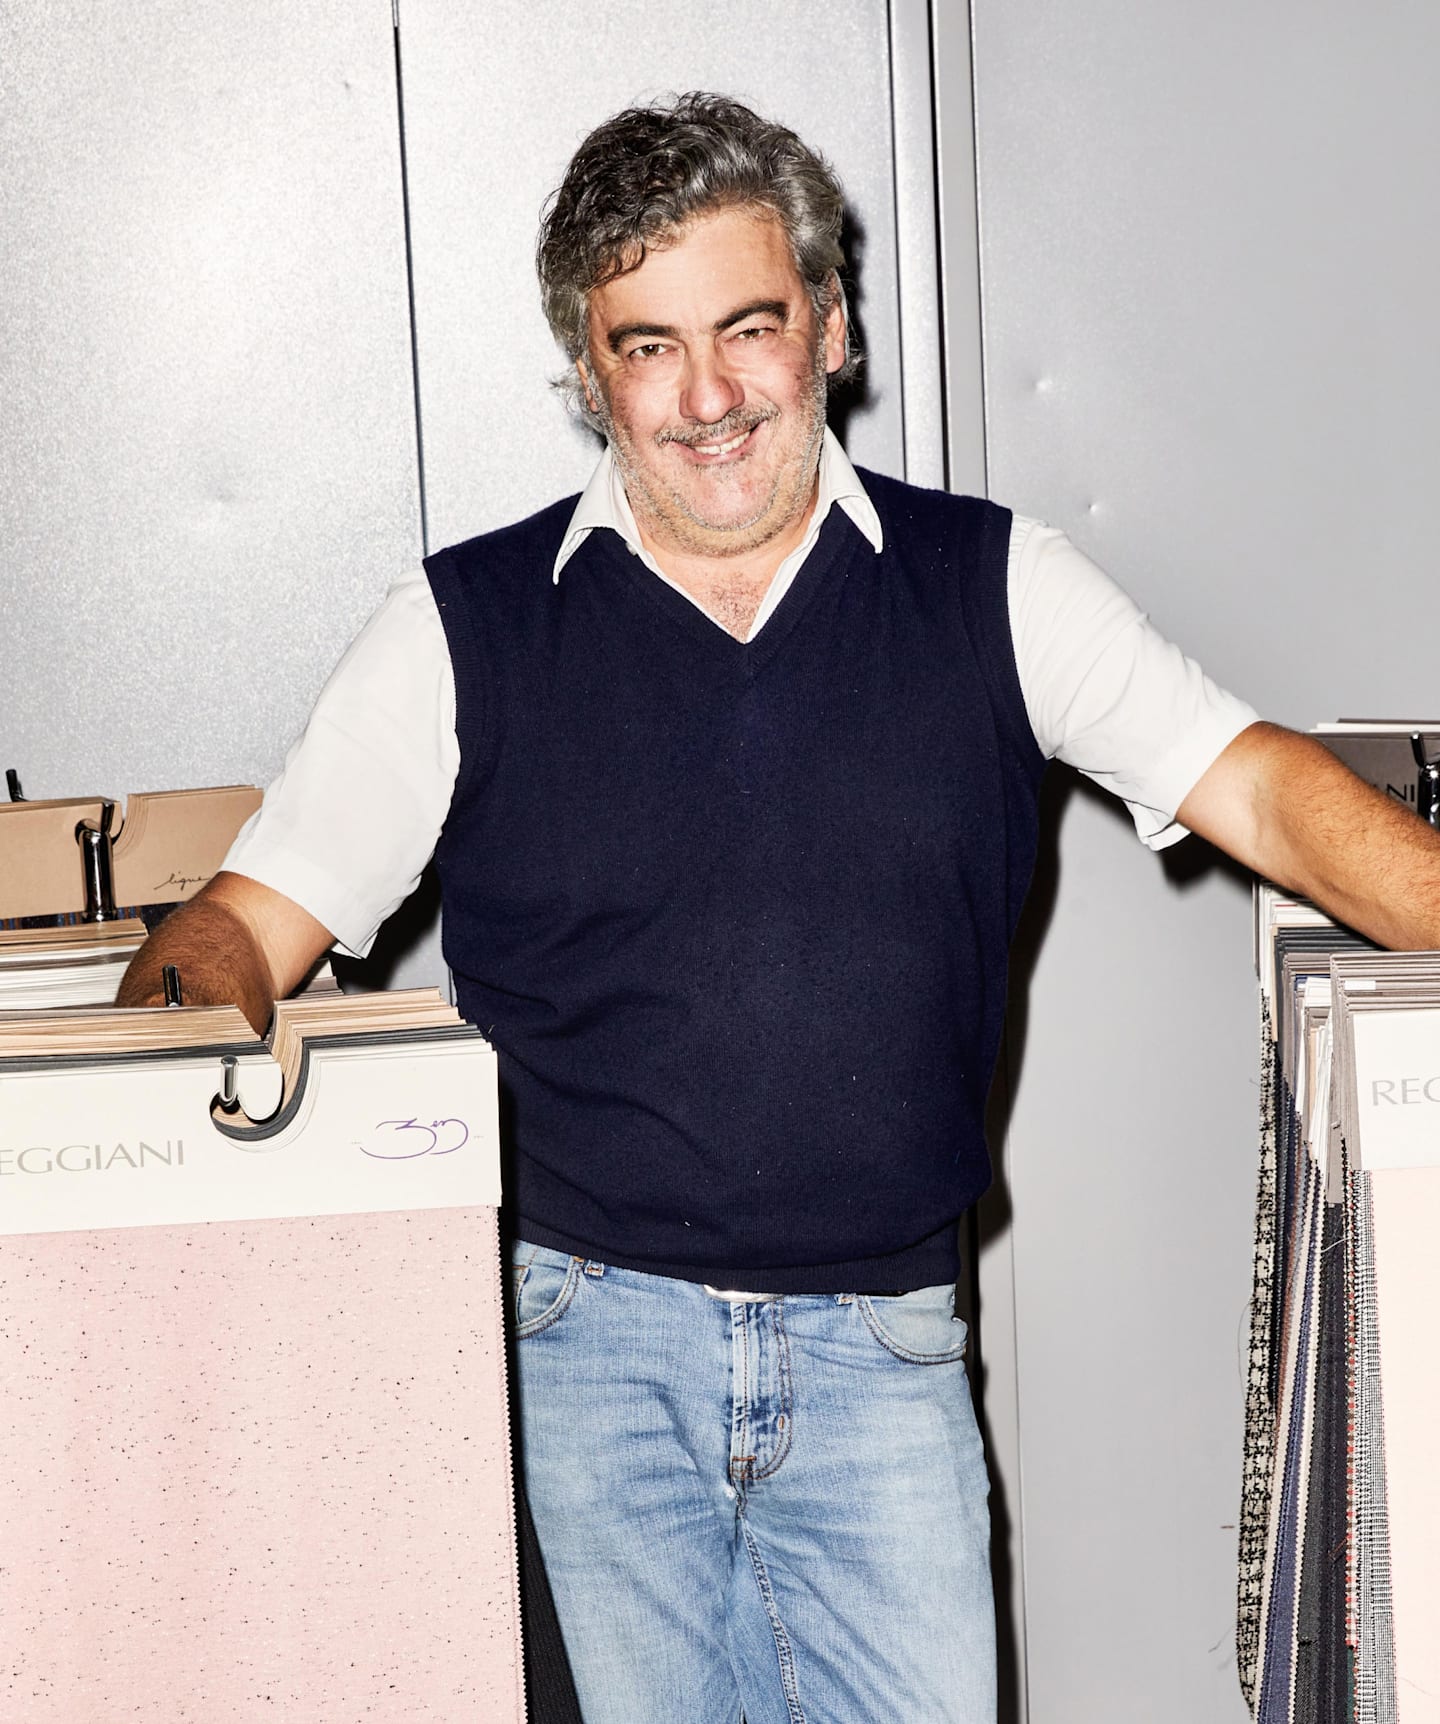 Giovanni Reggiani，首席执行官兼设计师，创始人 Attilio Reggiani 之子。